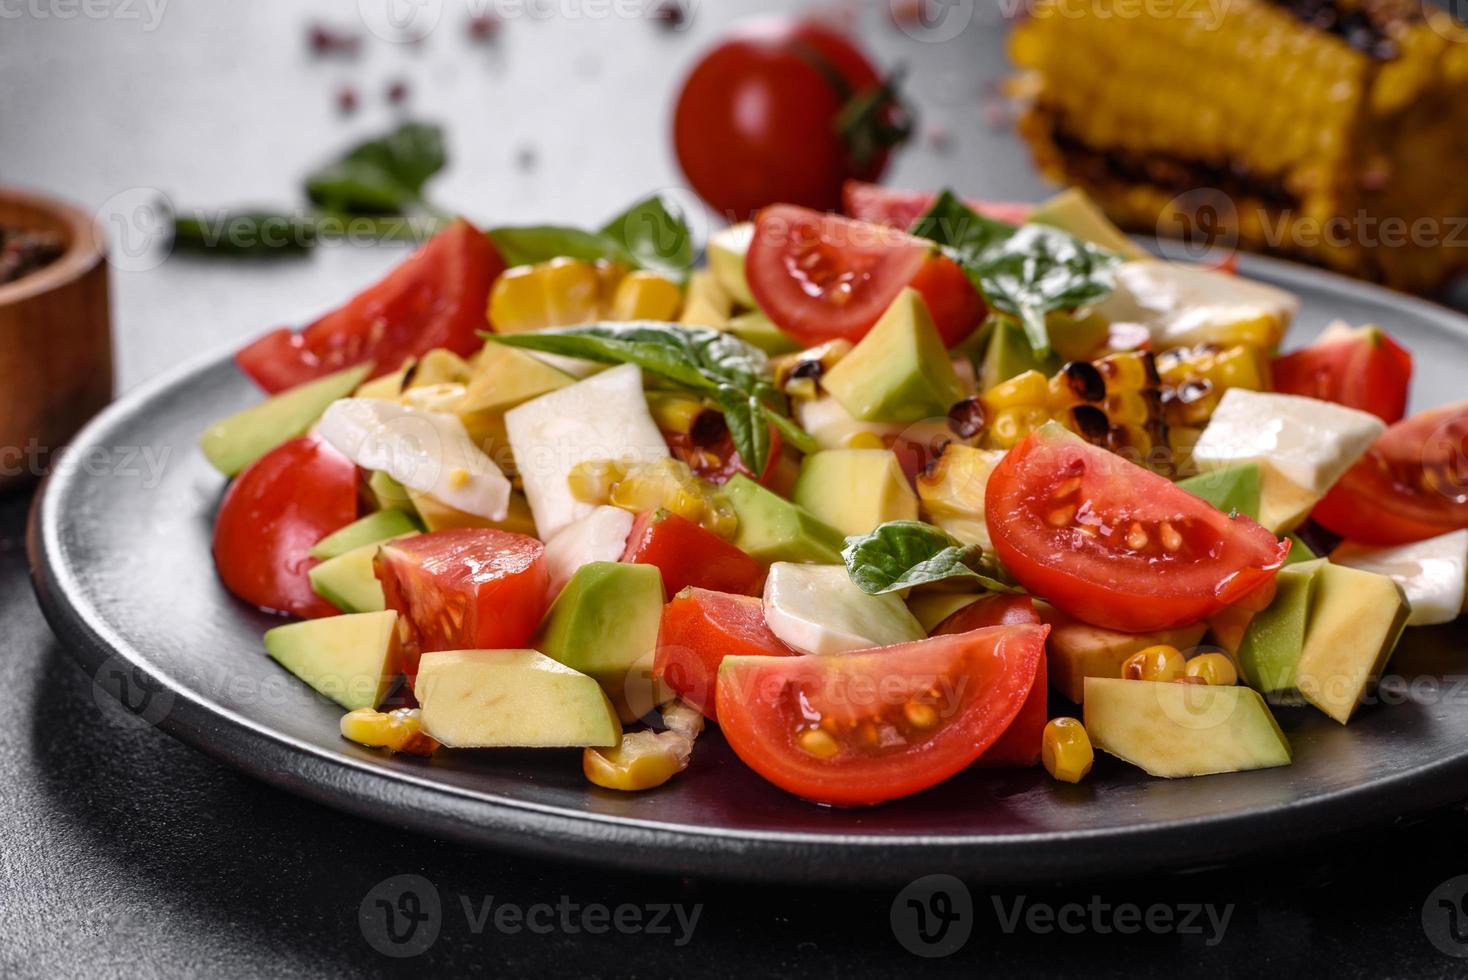 délicieuse salade fraîche avec tomates, avocat, fromage et maïs grillé photo